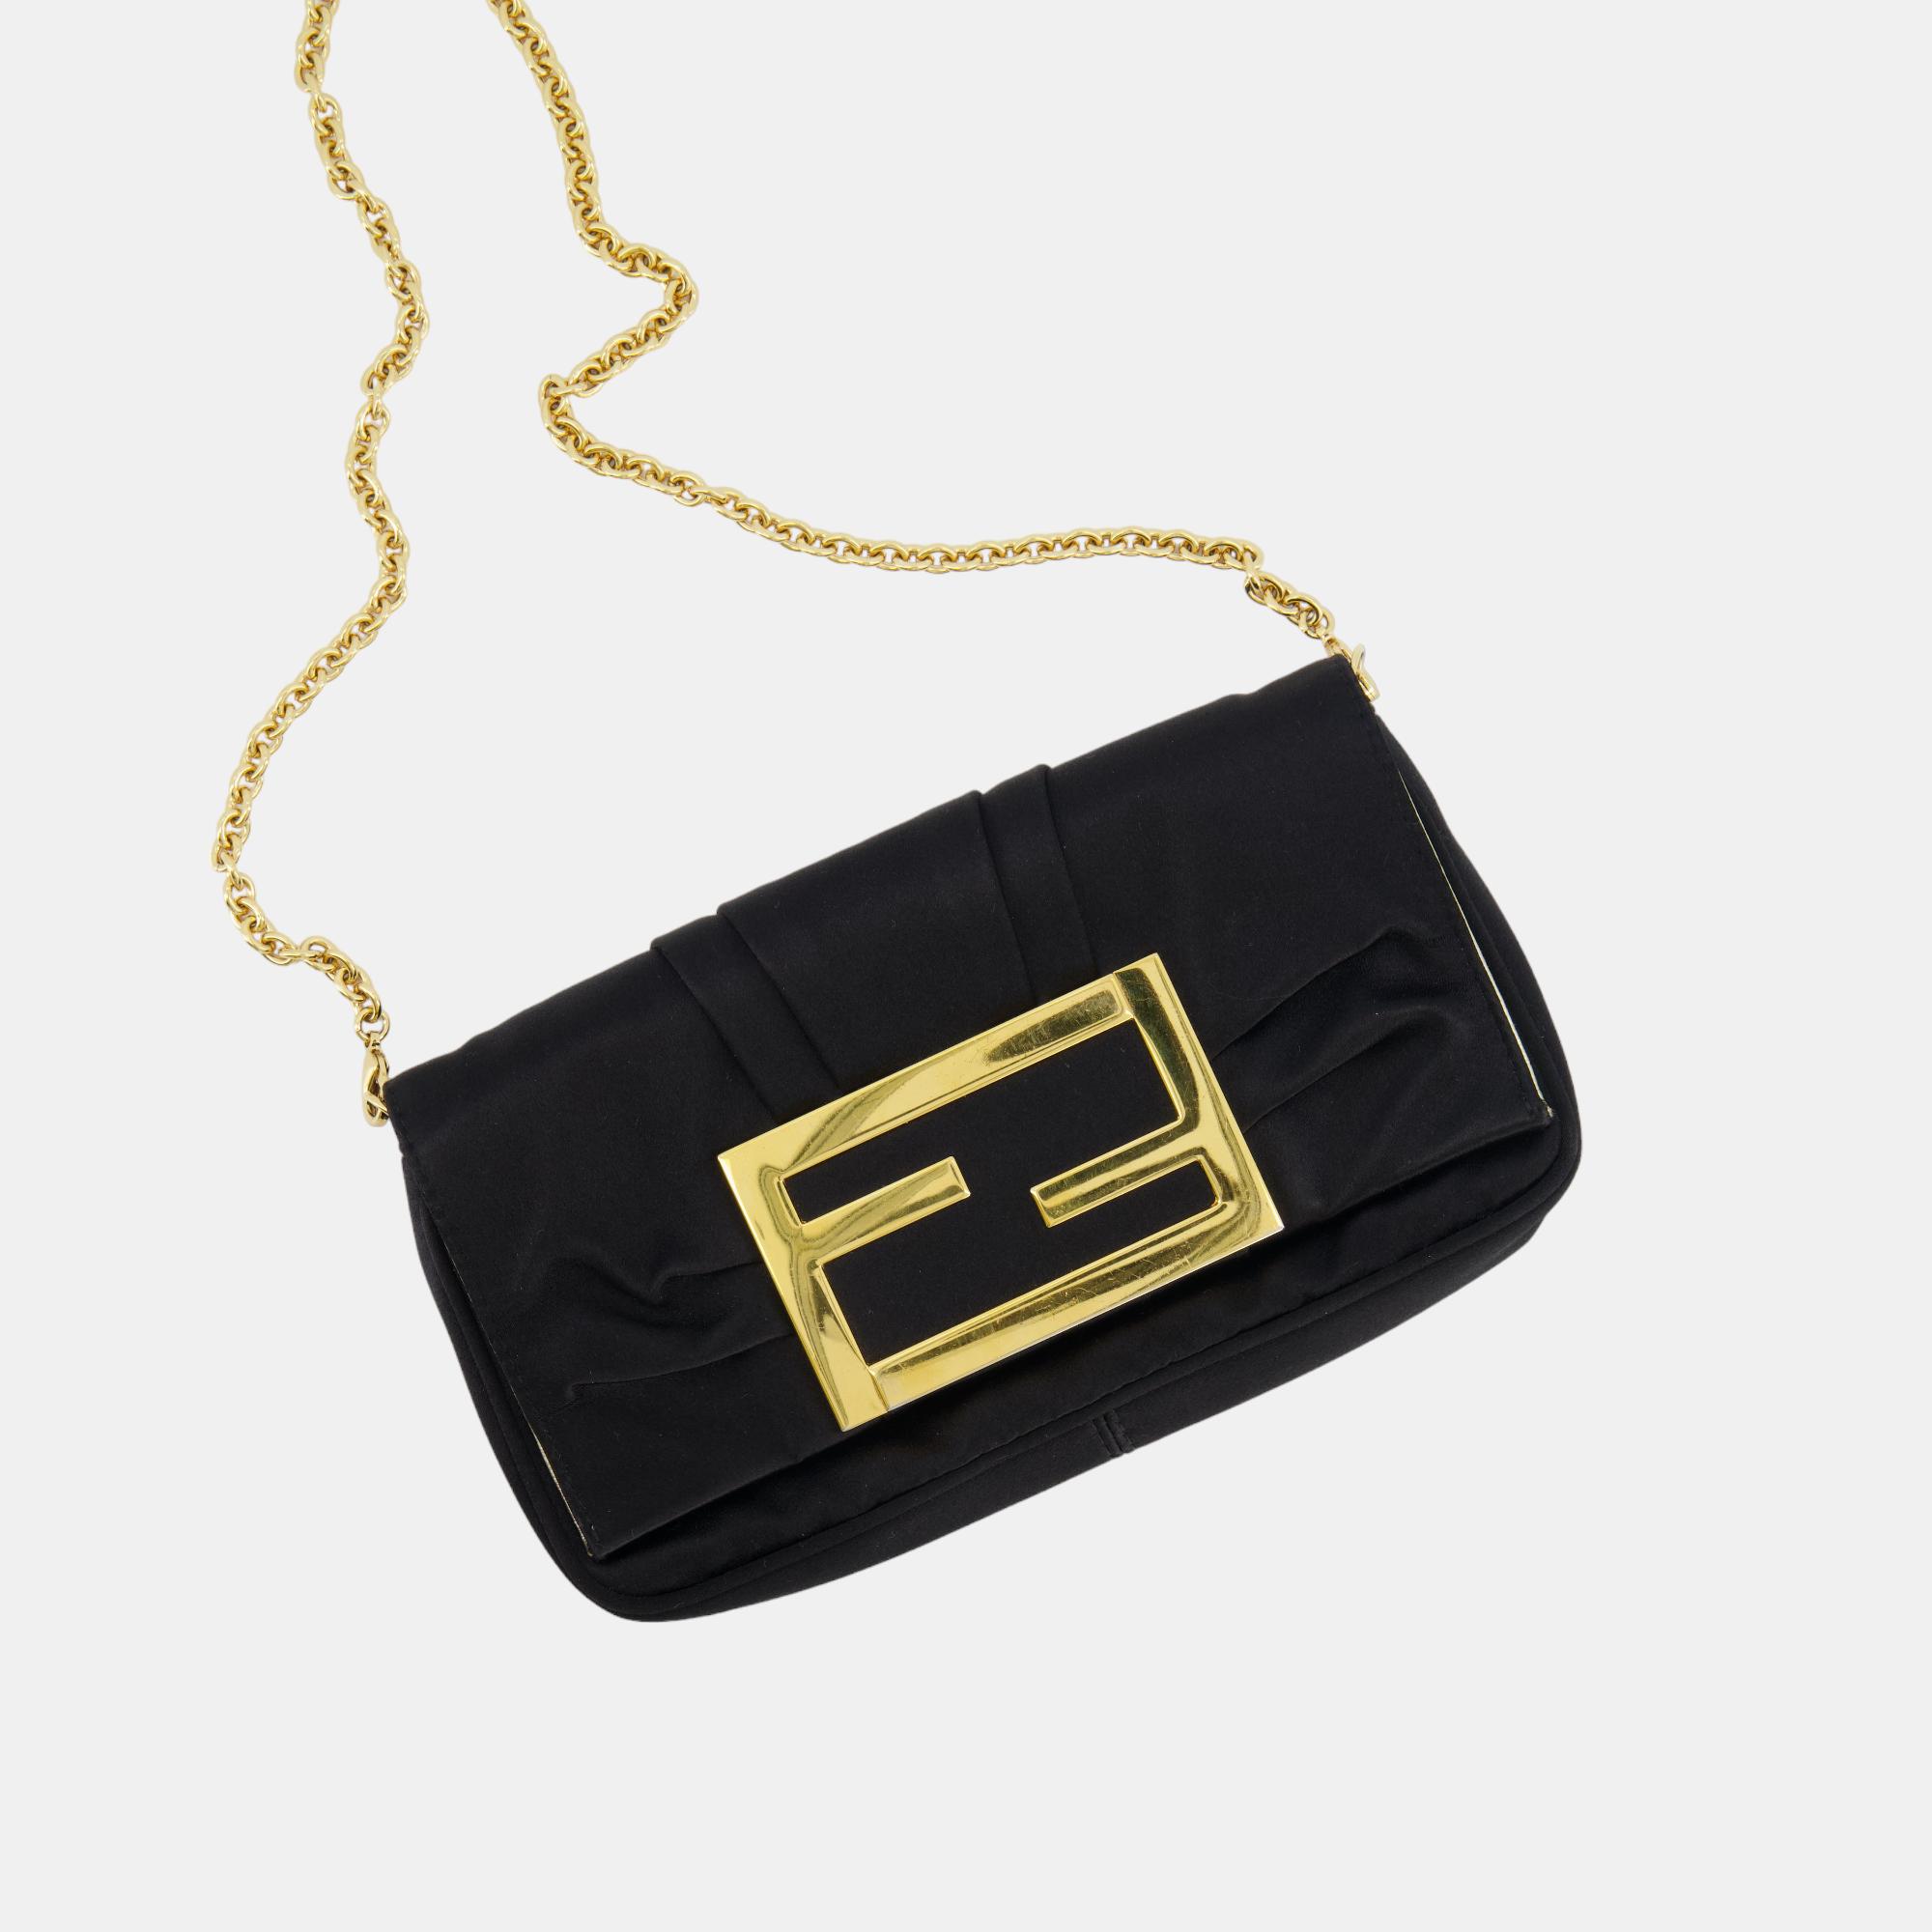 

Fendi Black Satin Baguette Clutch Bag with Detachable Chain Strap Detailing